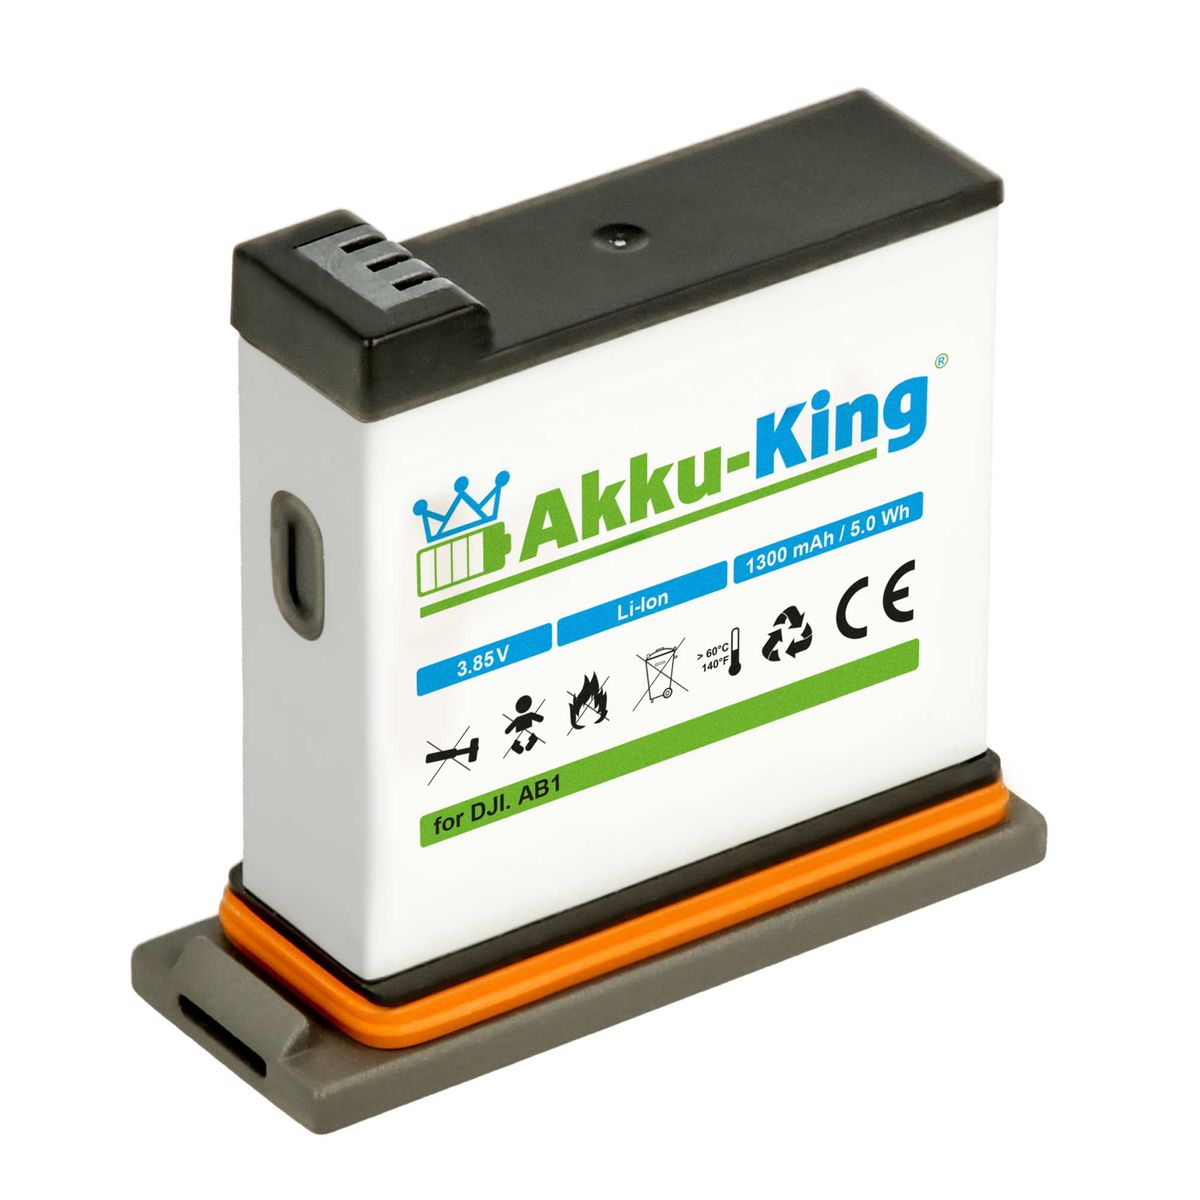 AKKU-KING Akku kompatibel DJI Kamera-Akku, 1300mAh Li-Ion 3.85 mit Volt, AB1 P01